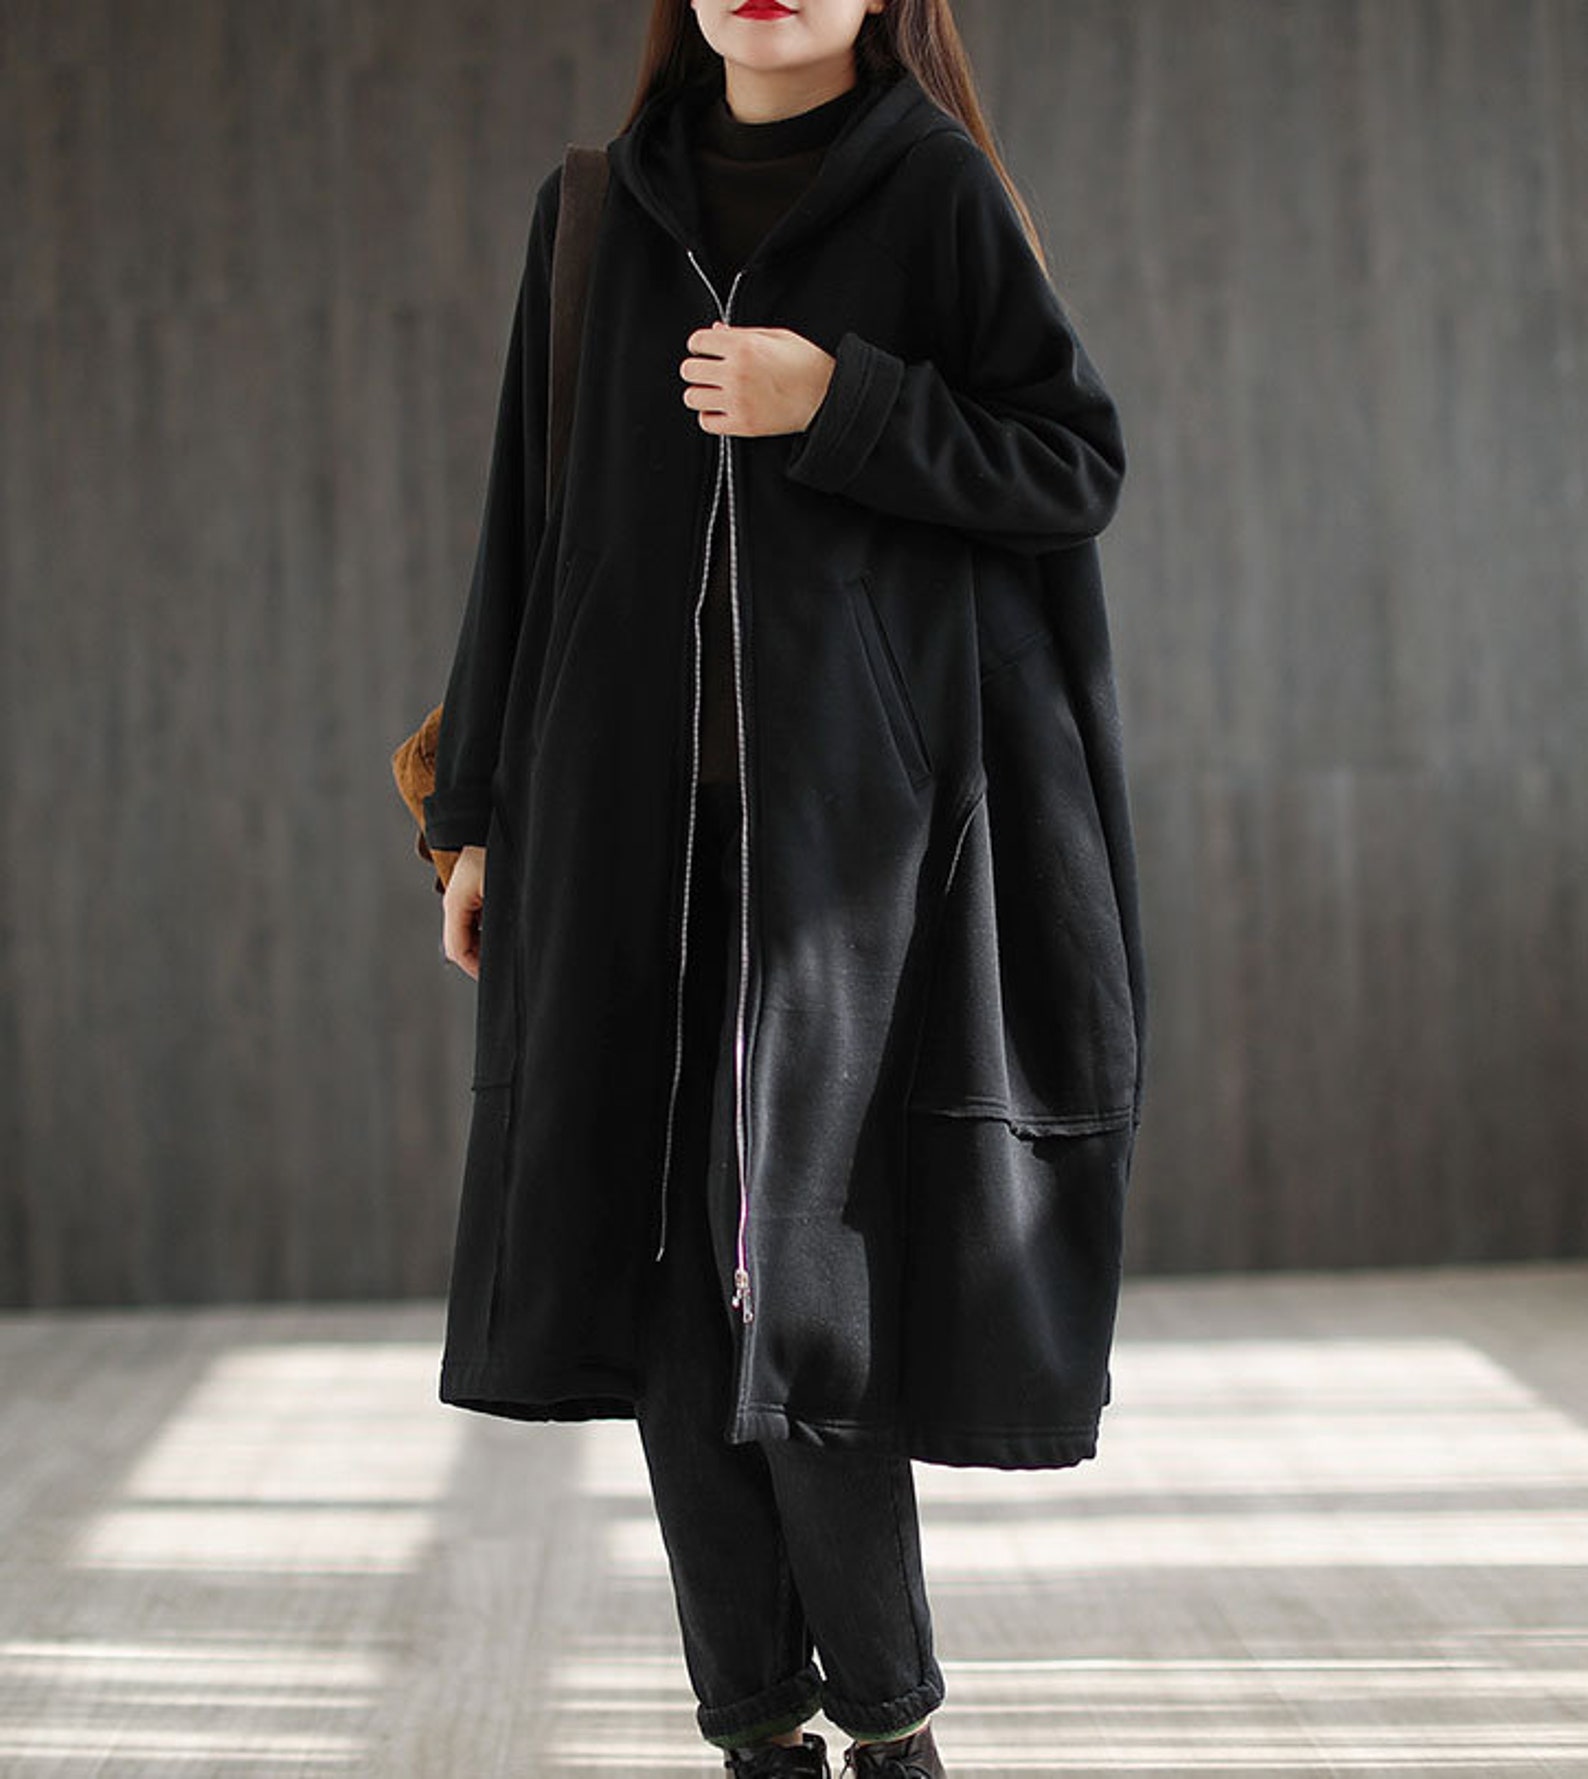 Women's retro hooded plus velvet coat mid-length coat | Etsy